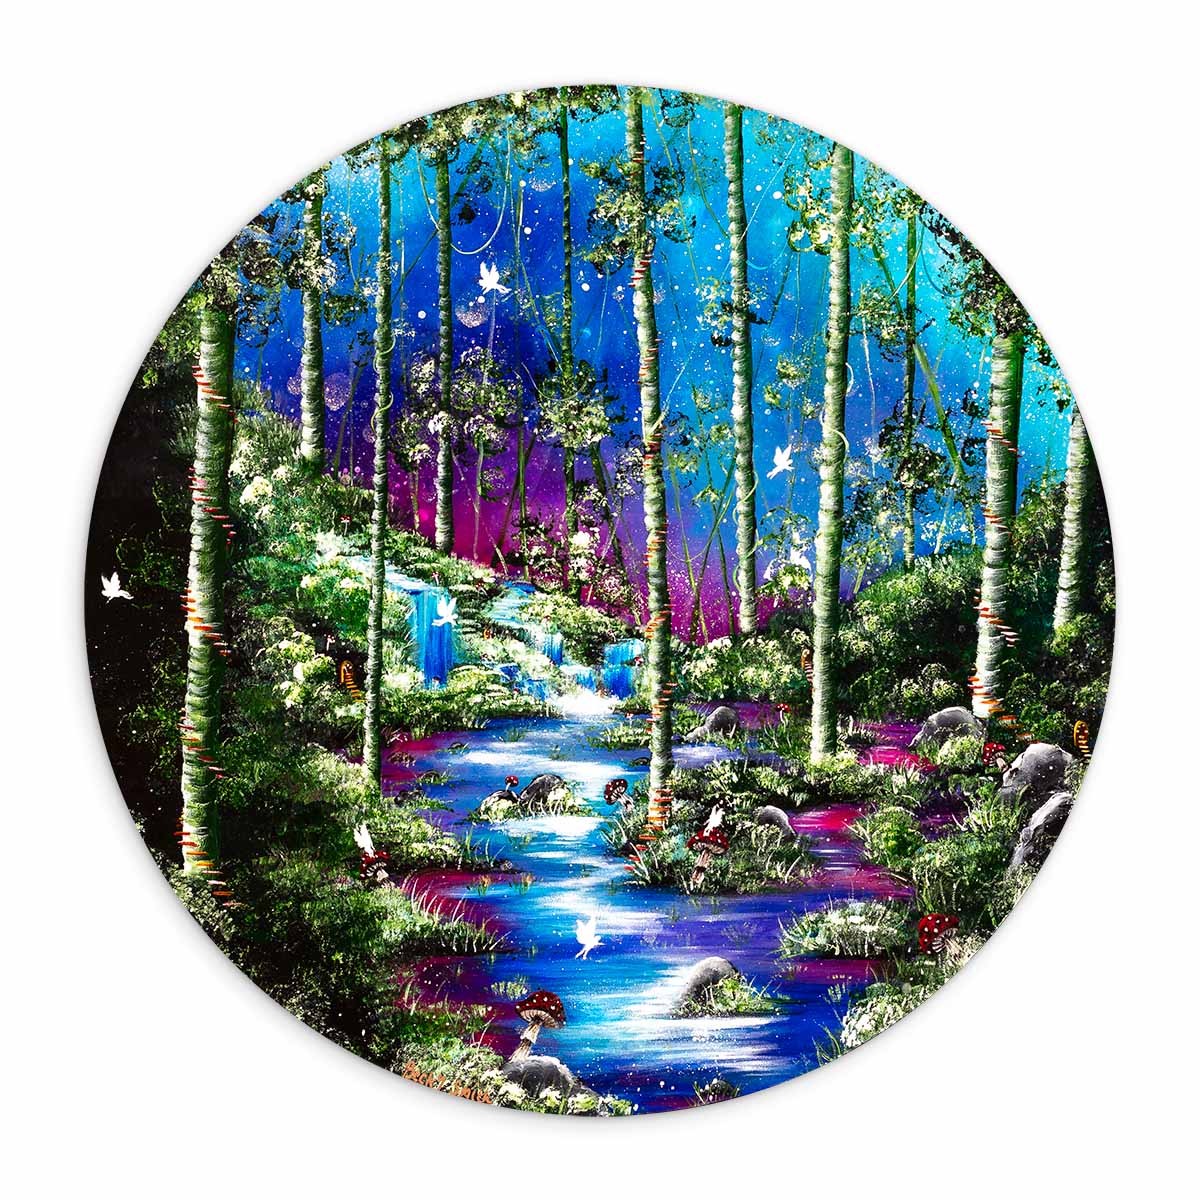 The Fairy Forest - Original Becky Smith Original